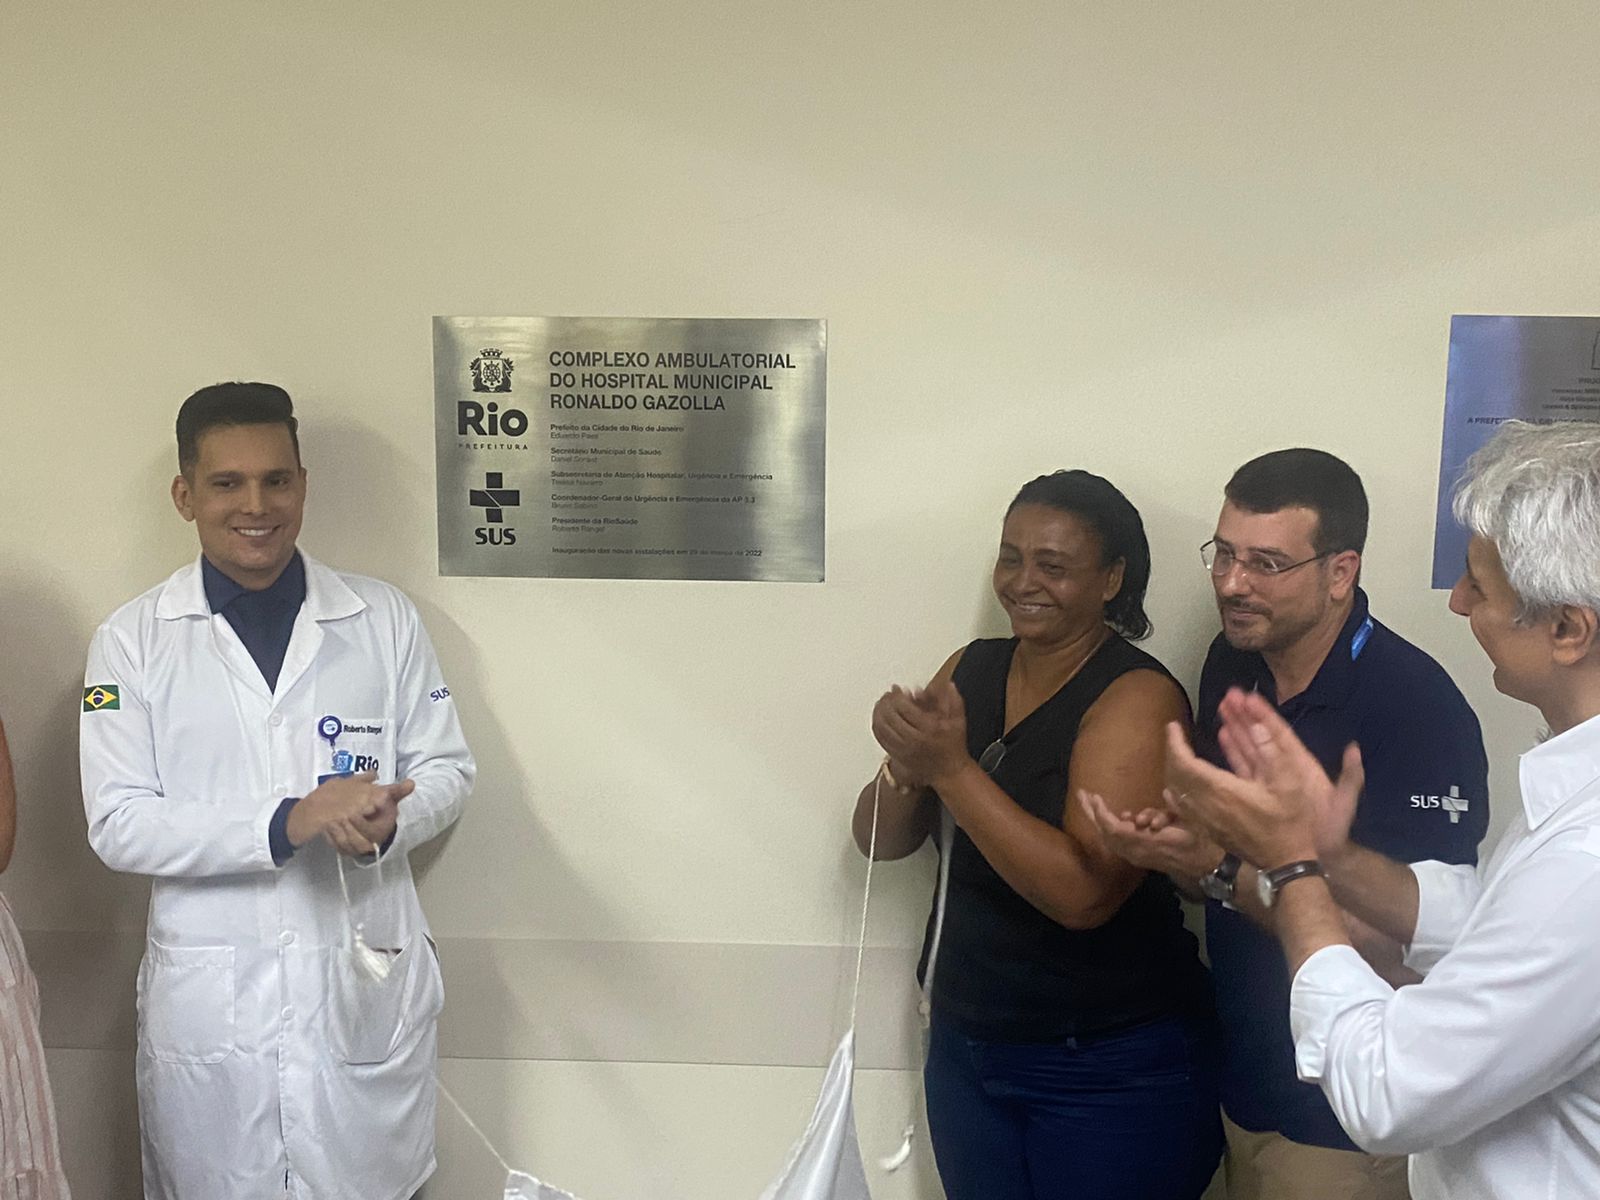 Centro de reabilitação para pacientes que apresentam sequelas pós-infecção pelo coronavírus (Foto: Tatiana Campbell / Super Rádio Tupi)